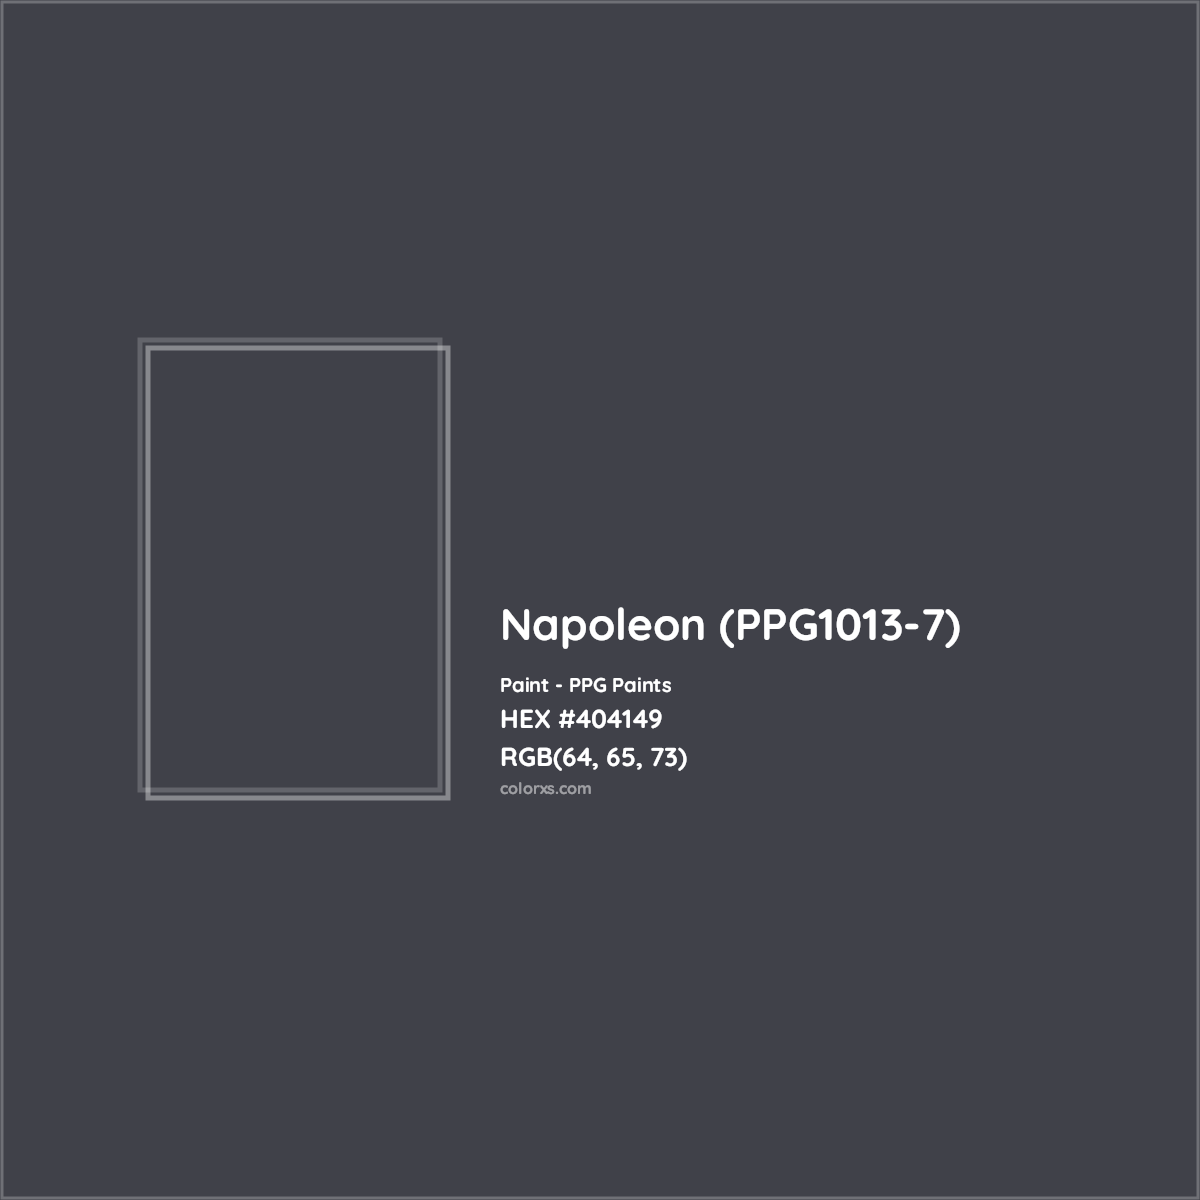 HEX #404149 Napoleon (PPG1013-7) Paint PPG Paints - Color Code